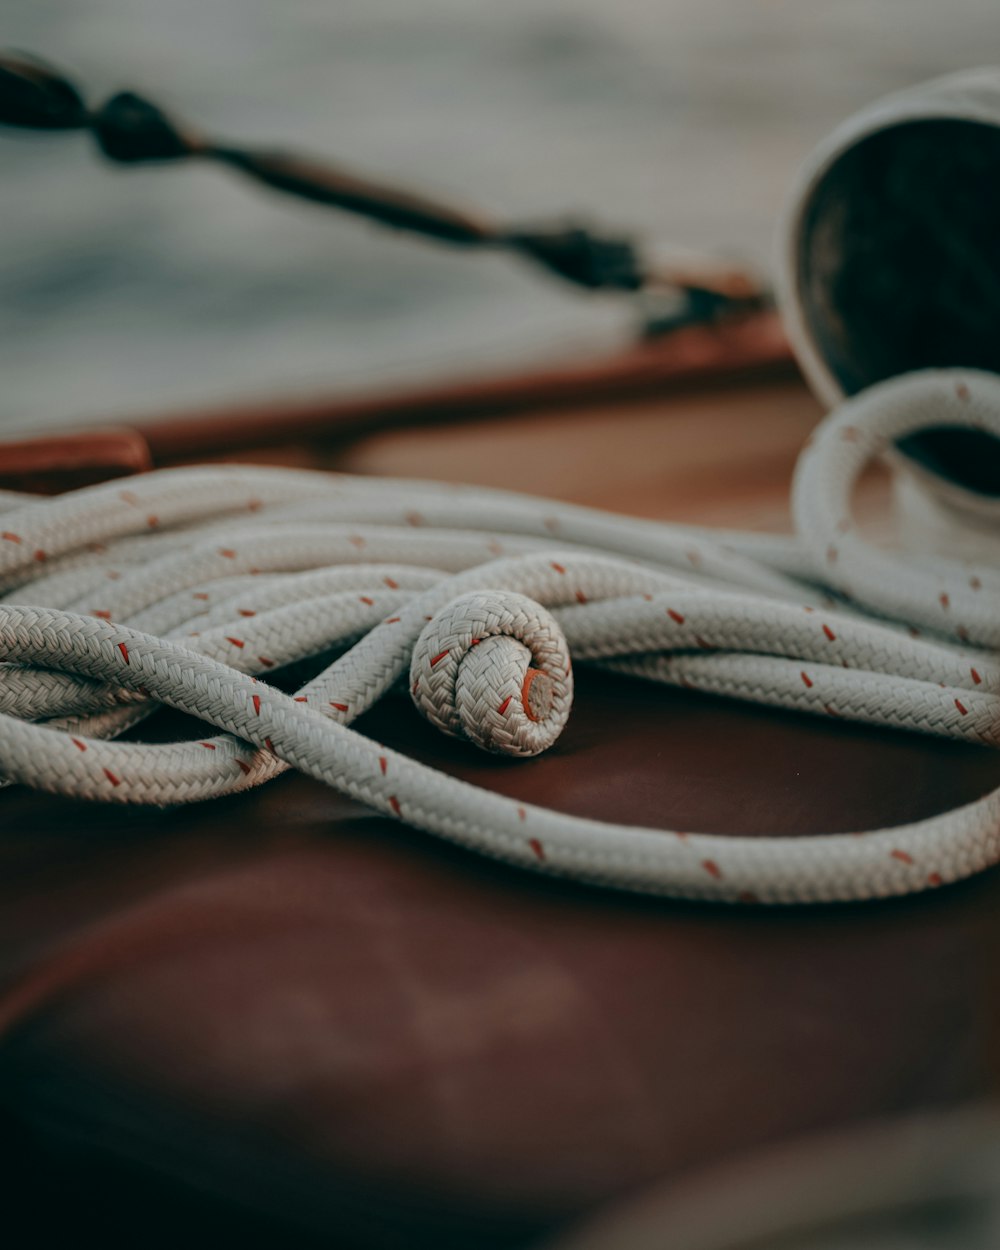 Un primer plano de una cuerda en un barco